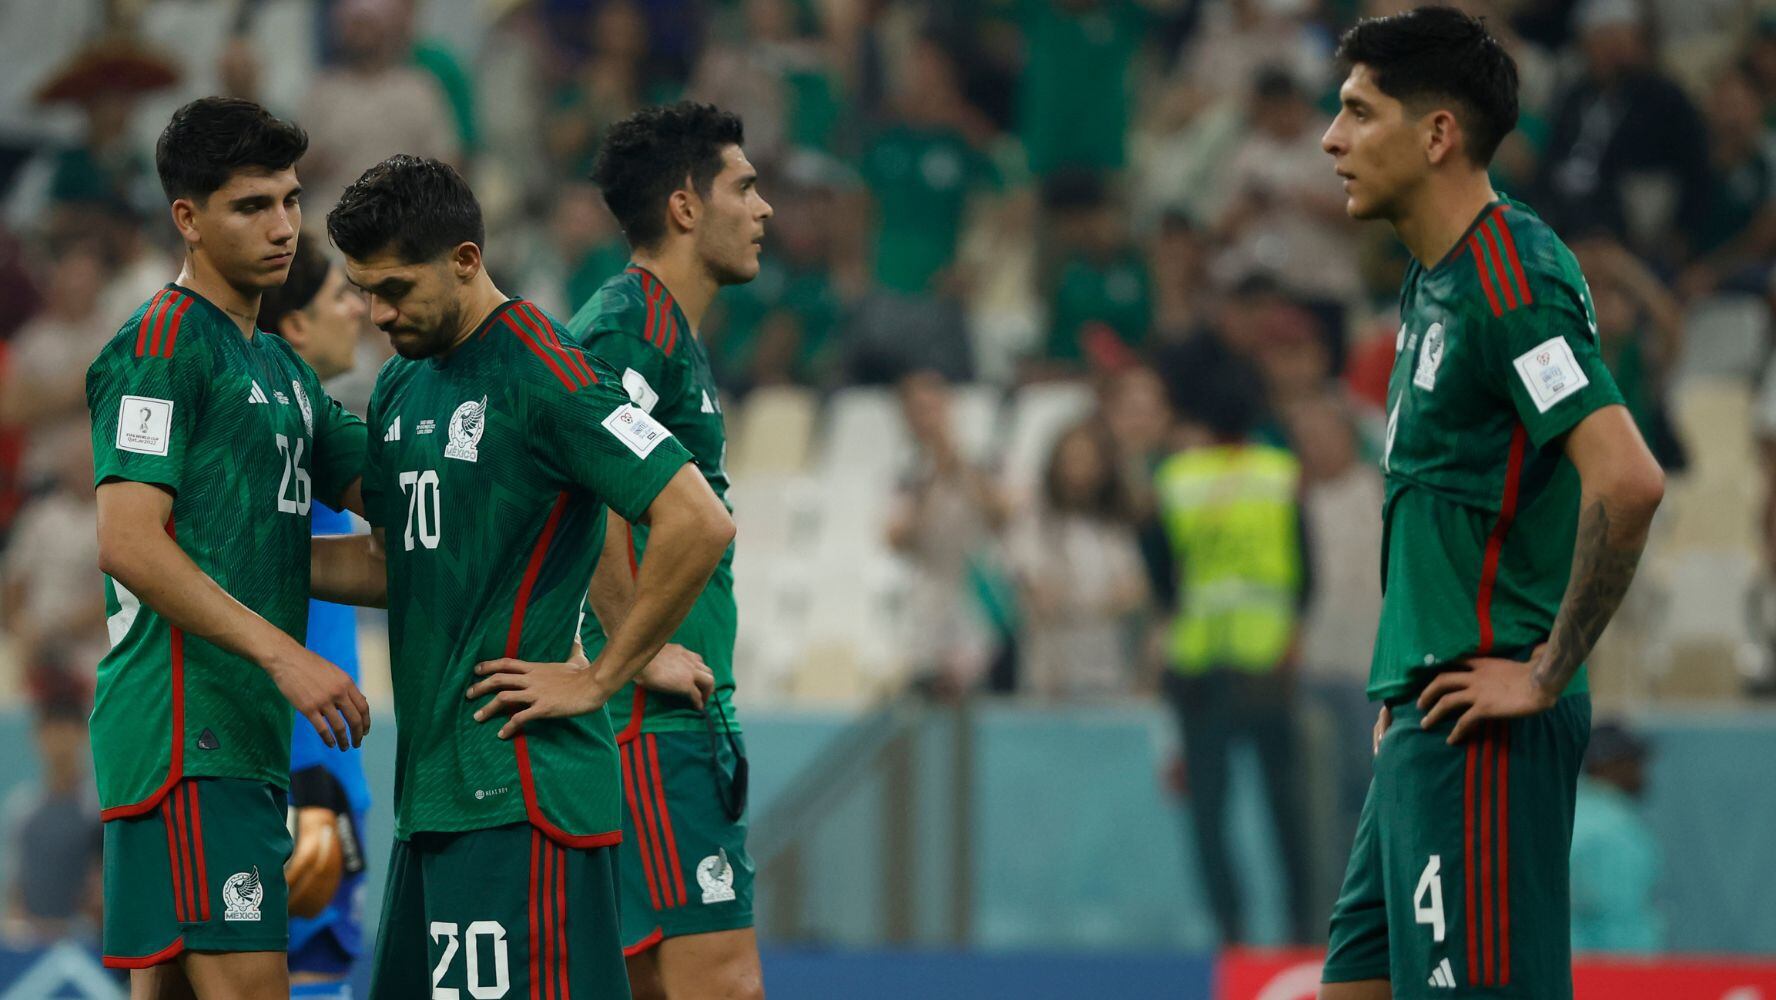 Liga MX: ¿Cuáles son las propuestas de cambios tras fracaso de México en Qatar 2022?